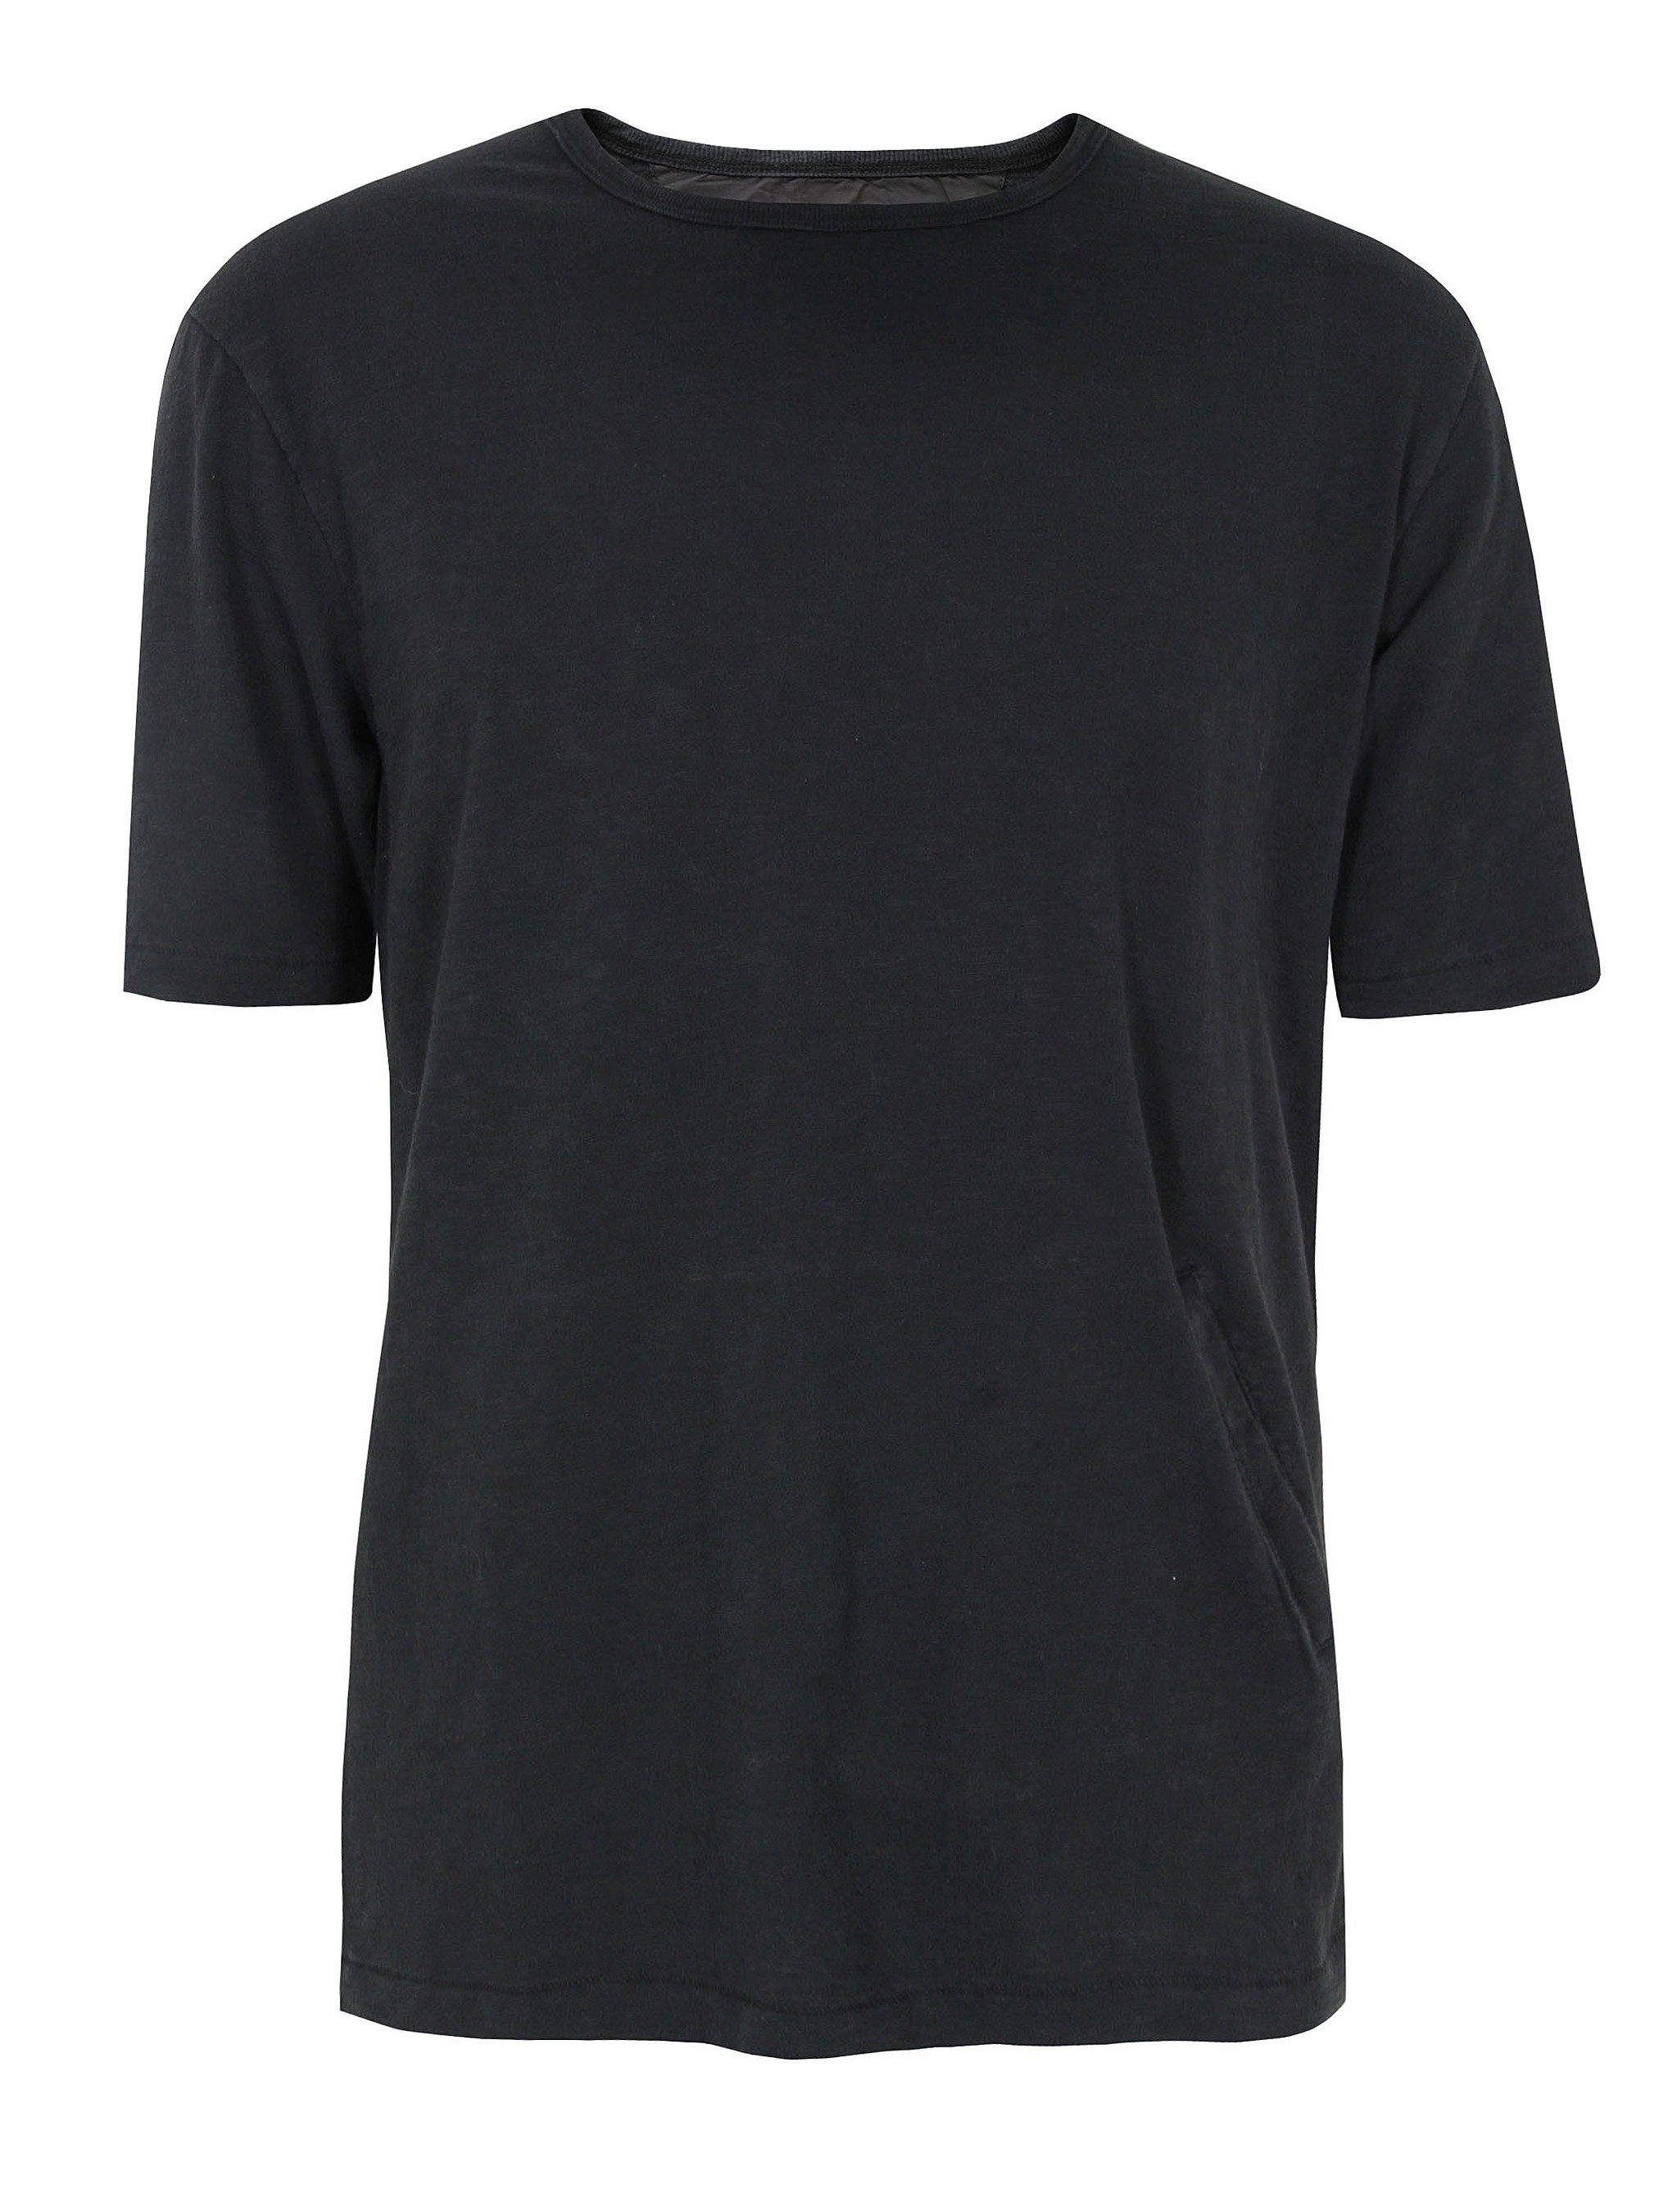 Cut resistant T-shirt black Kevlar - Kogelwerende vesten ... - ClipArt ...